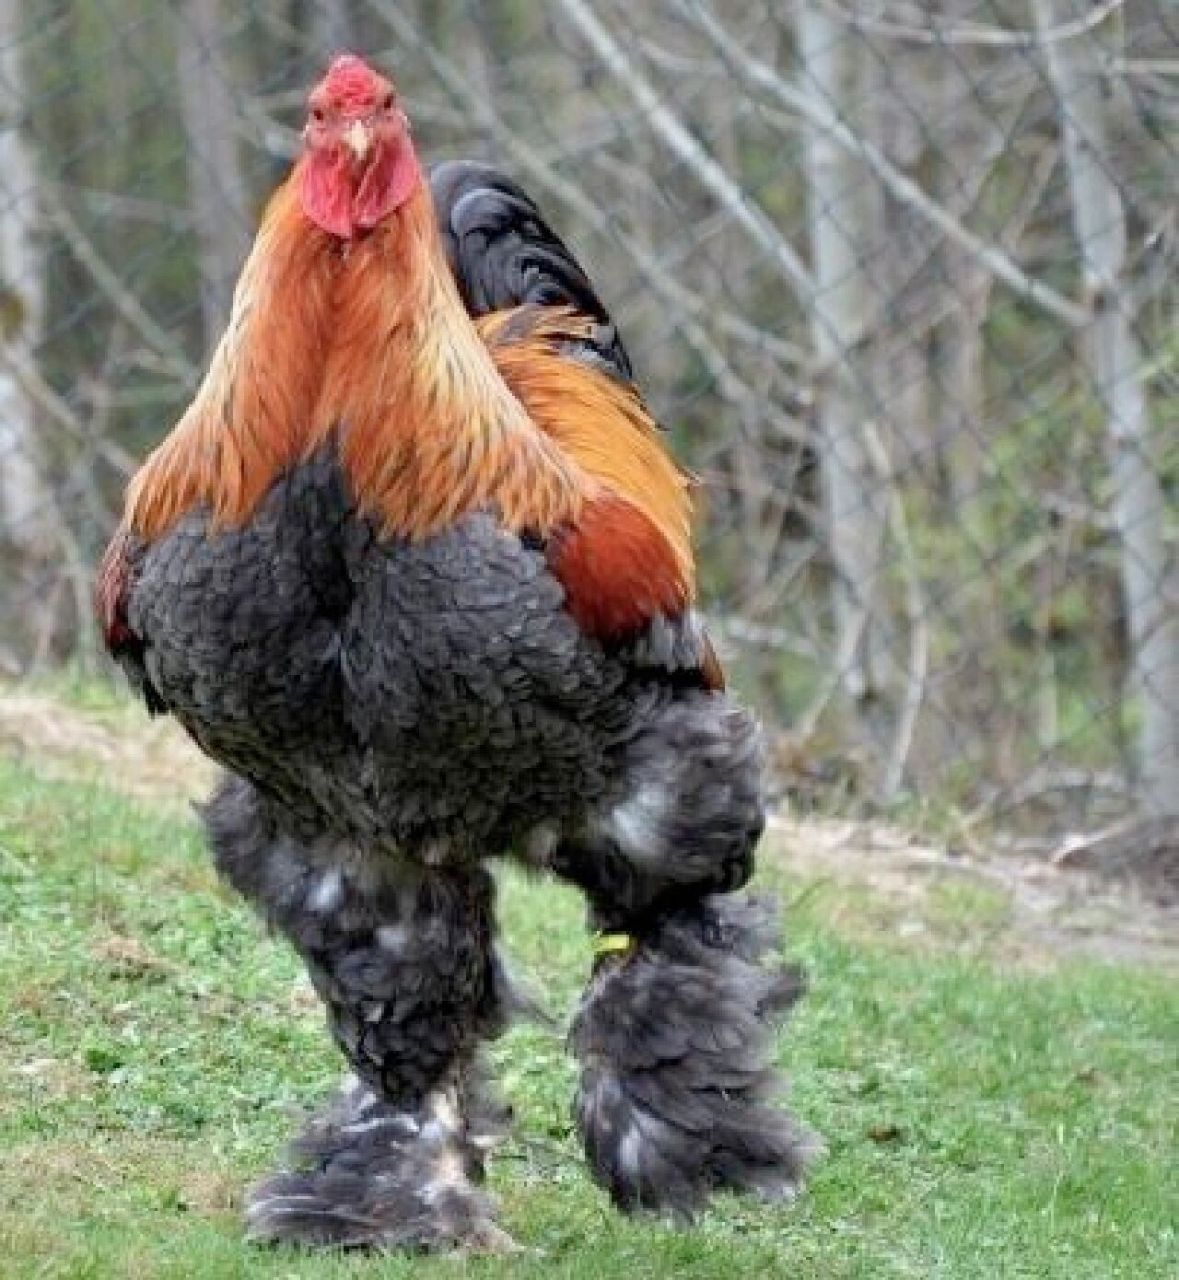 世界上最大的鸡 婆罗门鸡 最早从我国引进美国,通过杂交培育出了这种